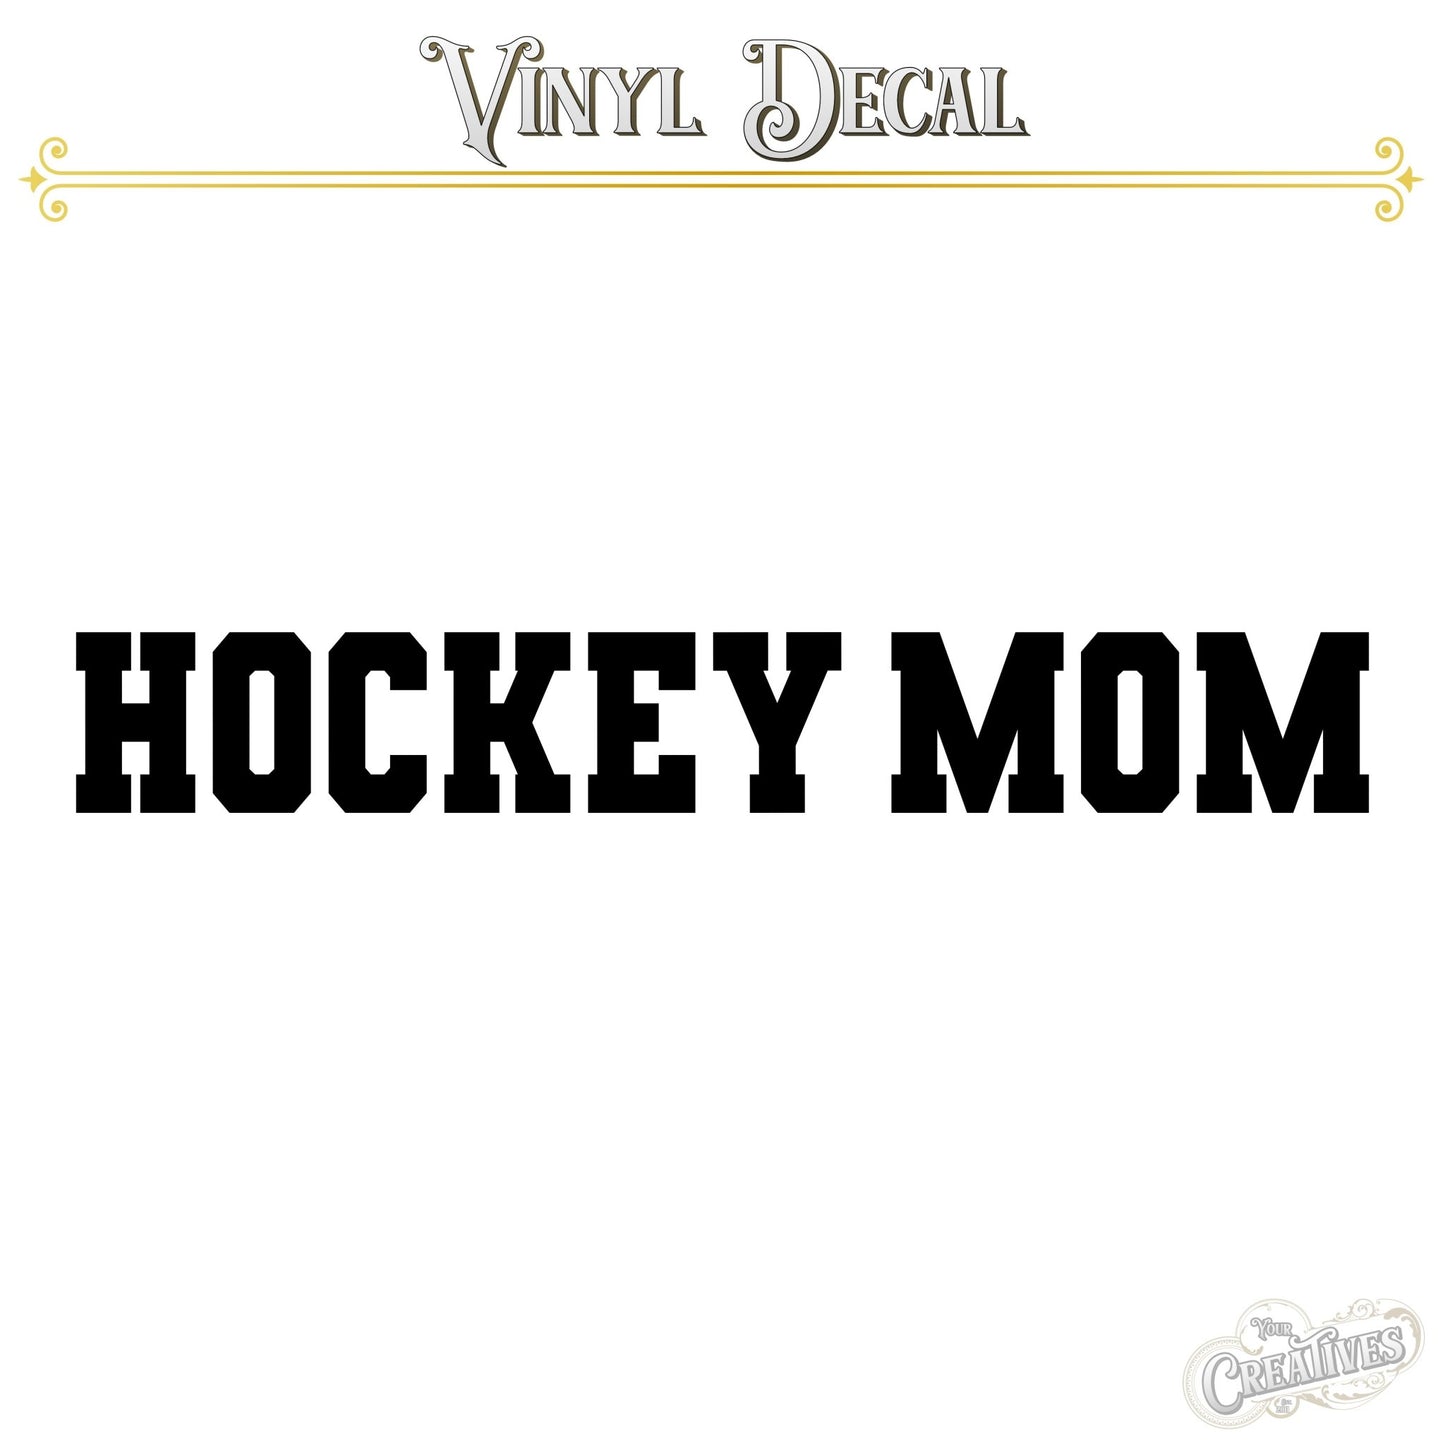 Hockey Mom Vinyl Decal - Your Creatives Inc